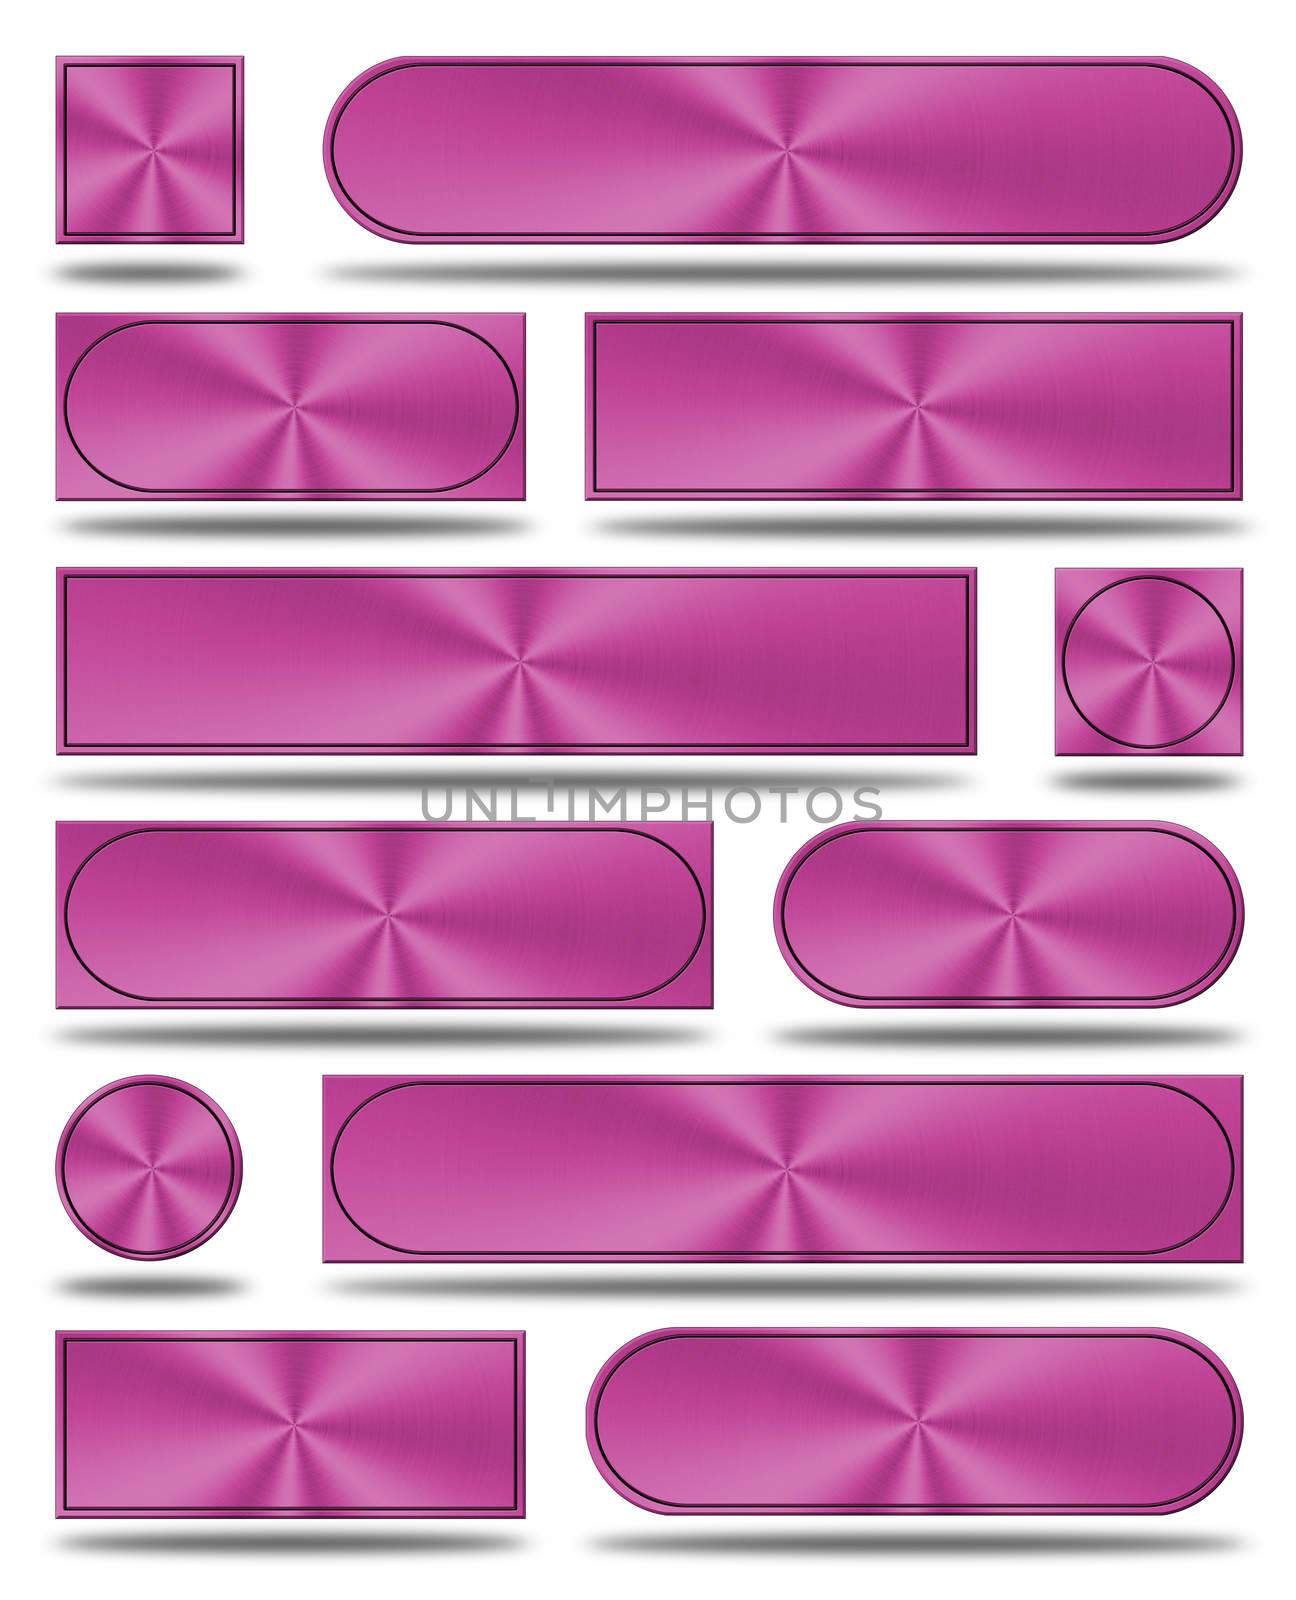 The aluminum buttons- pink version by konradkerker